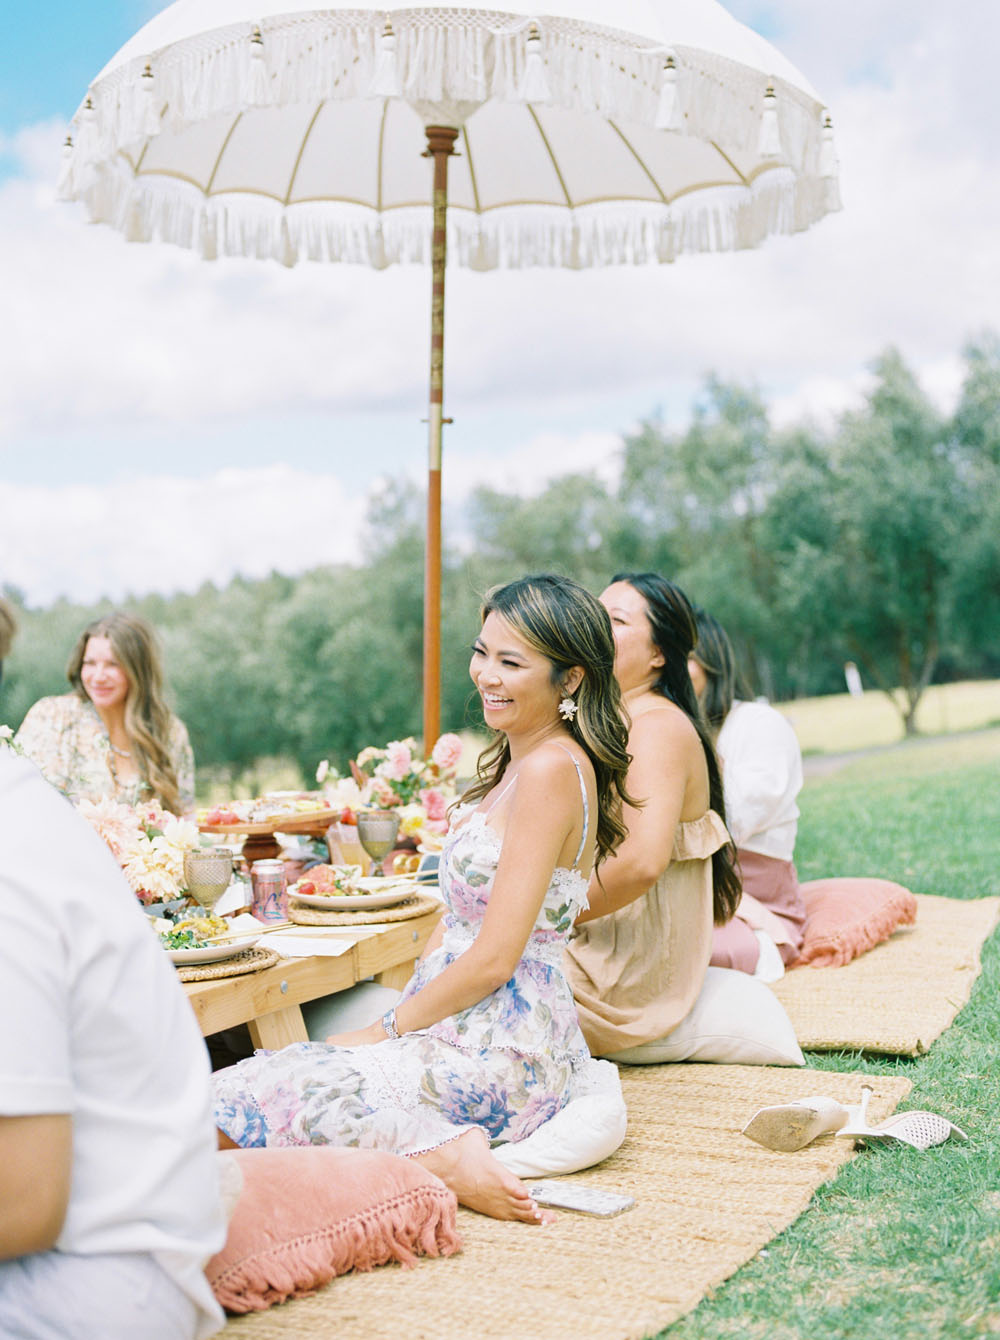 sun umbrella for spring picnic at Maui lavender farms